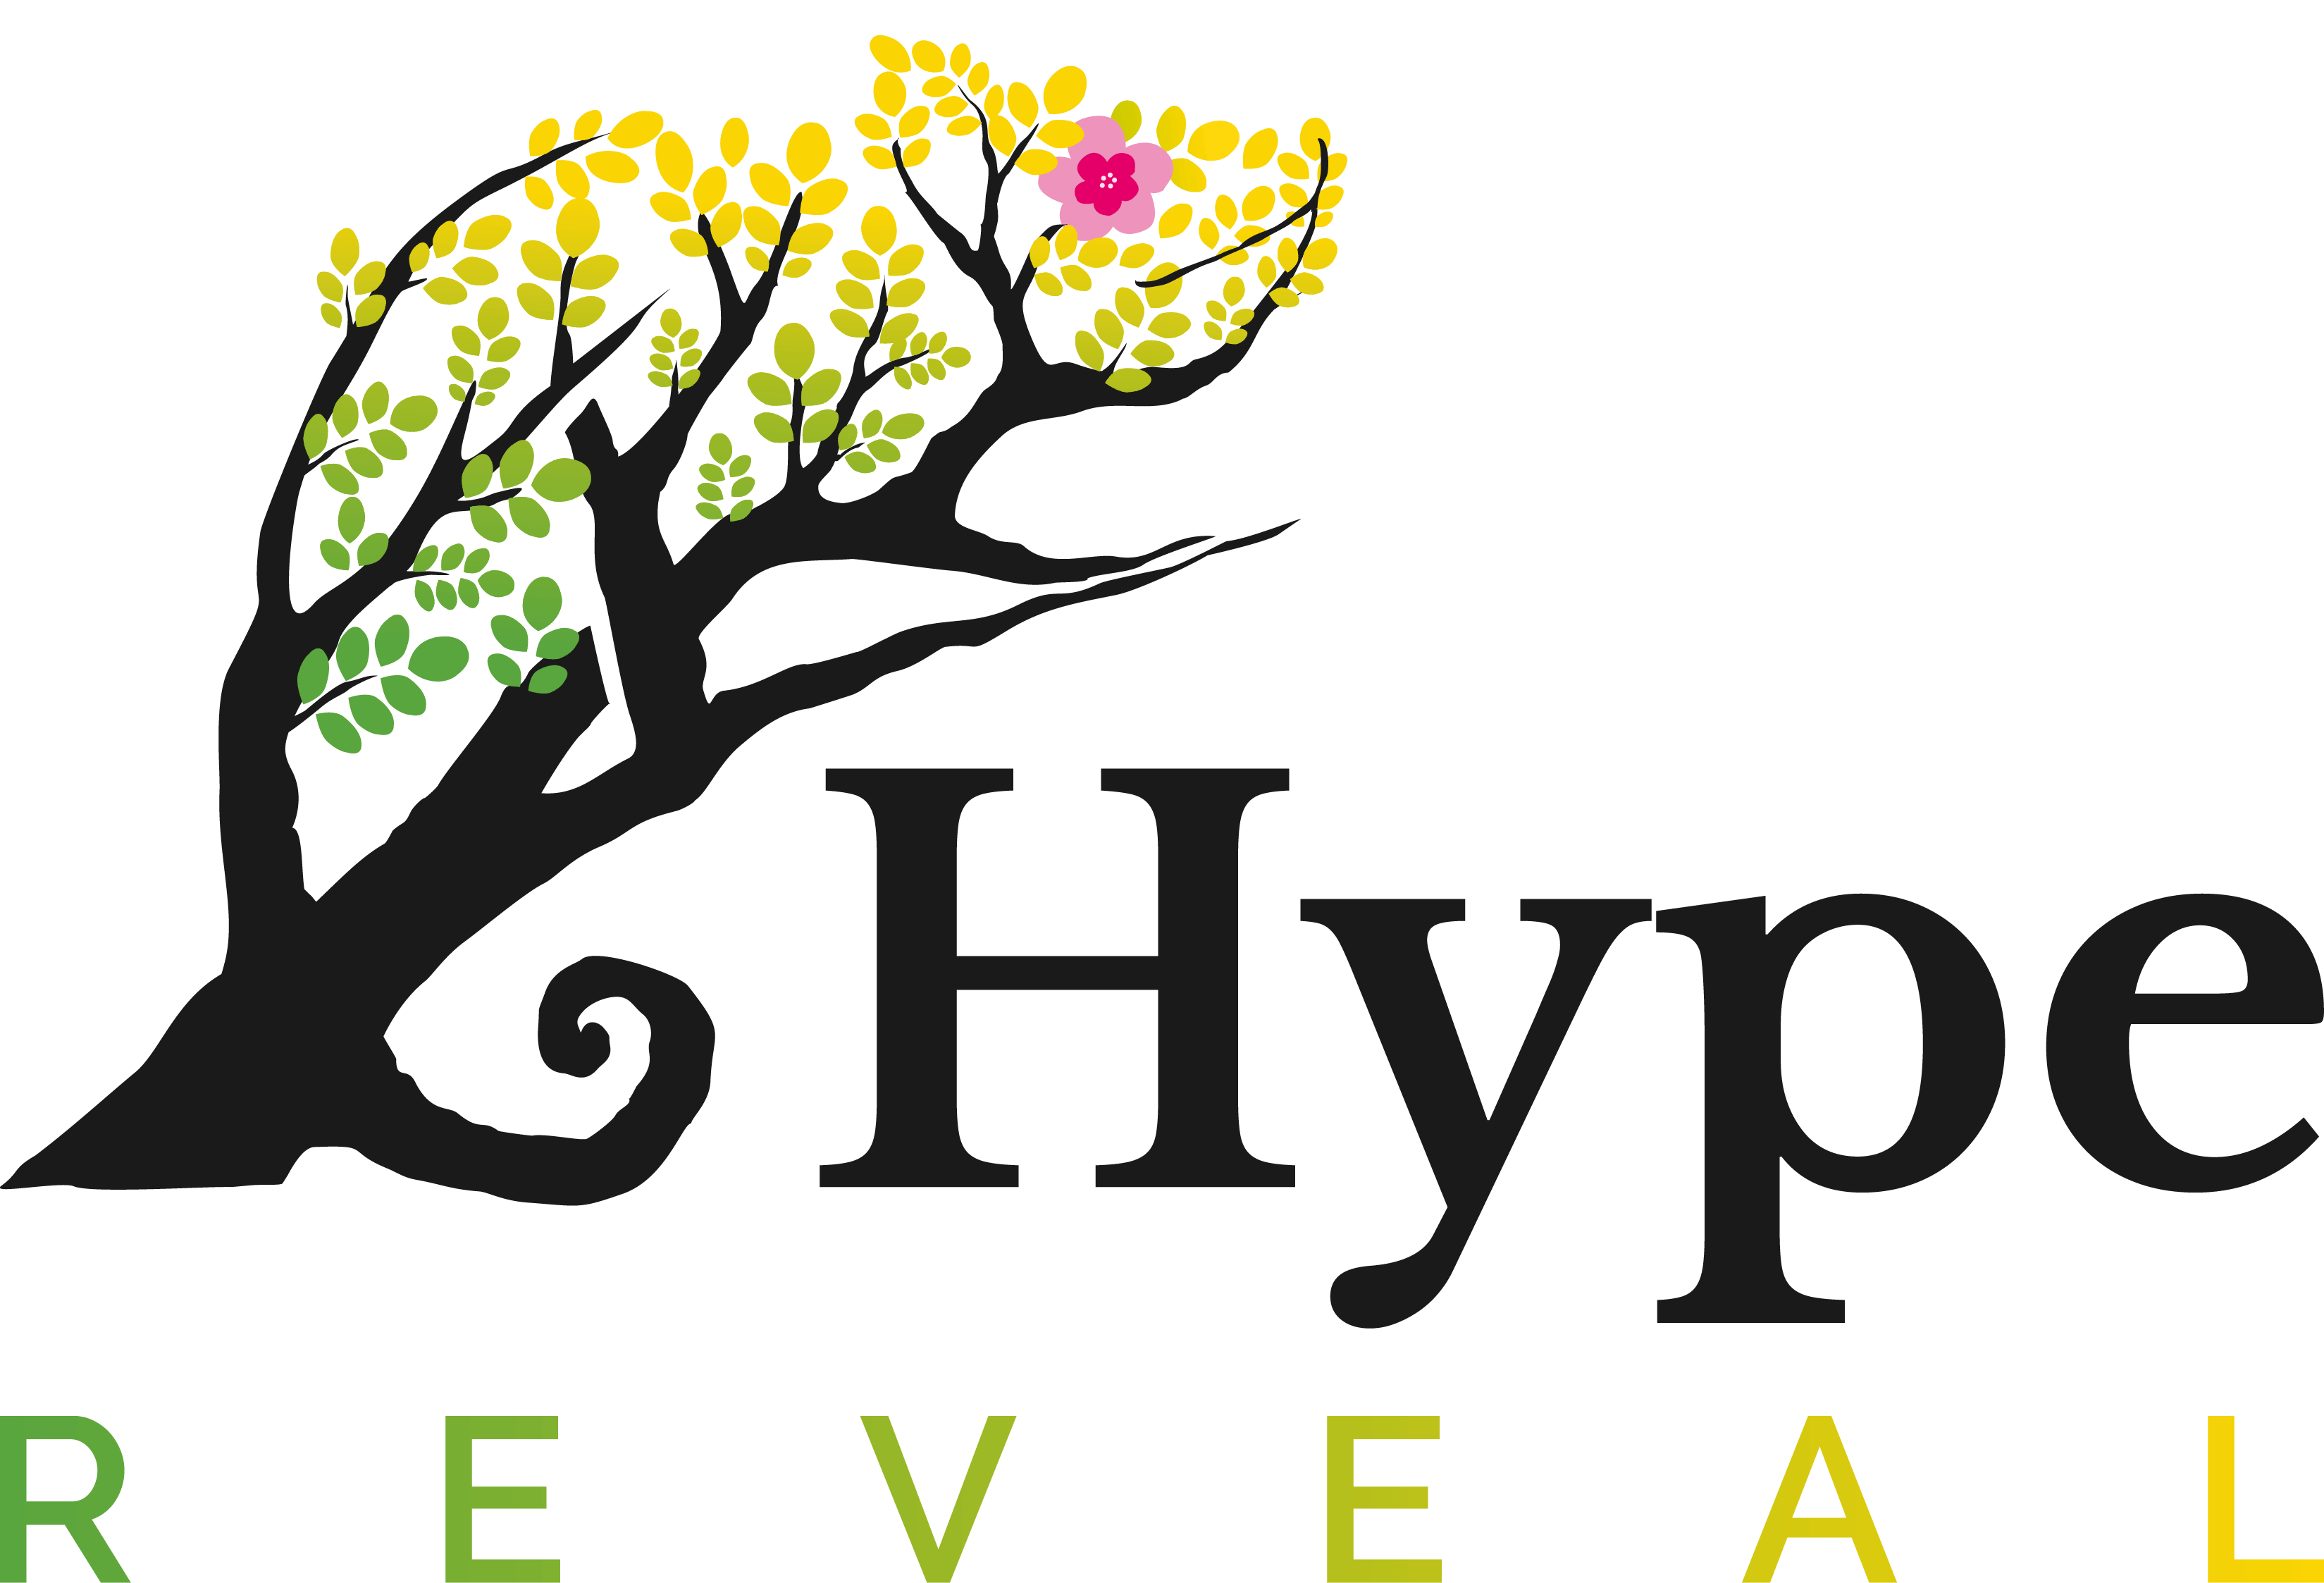 HypeReveal Unique Web3 Analytics